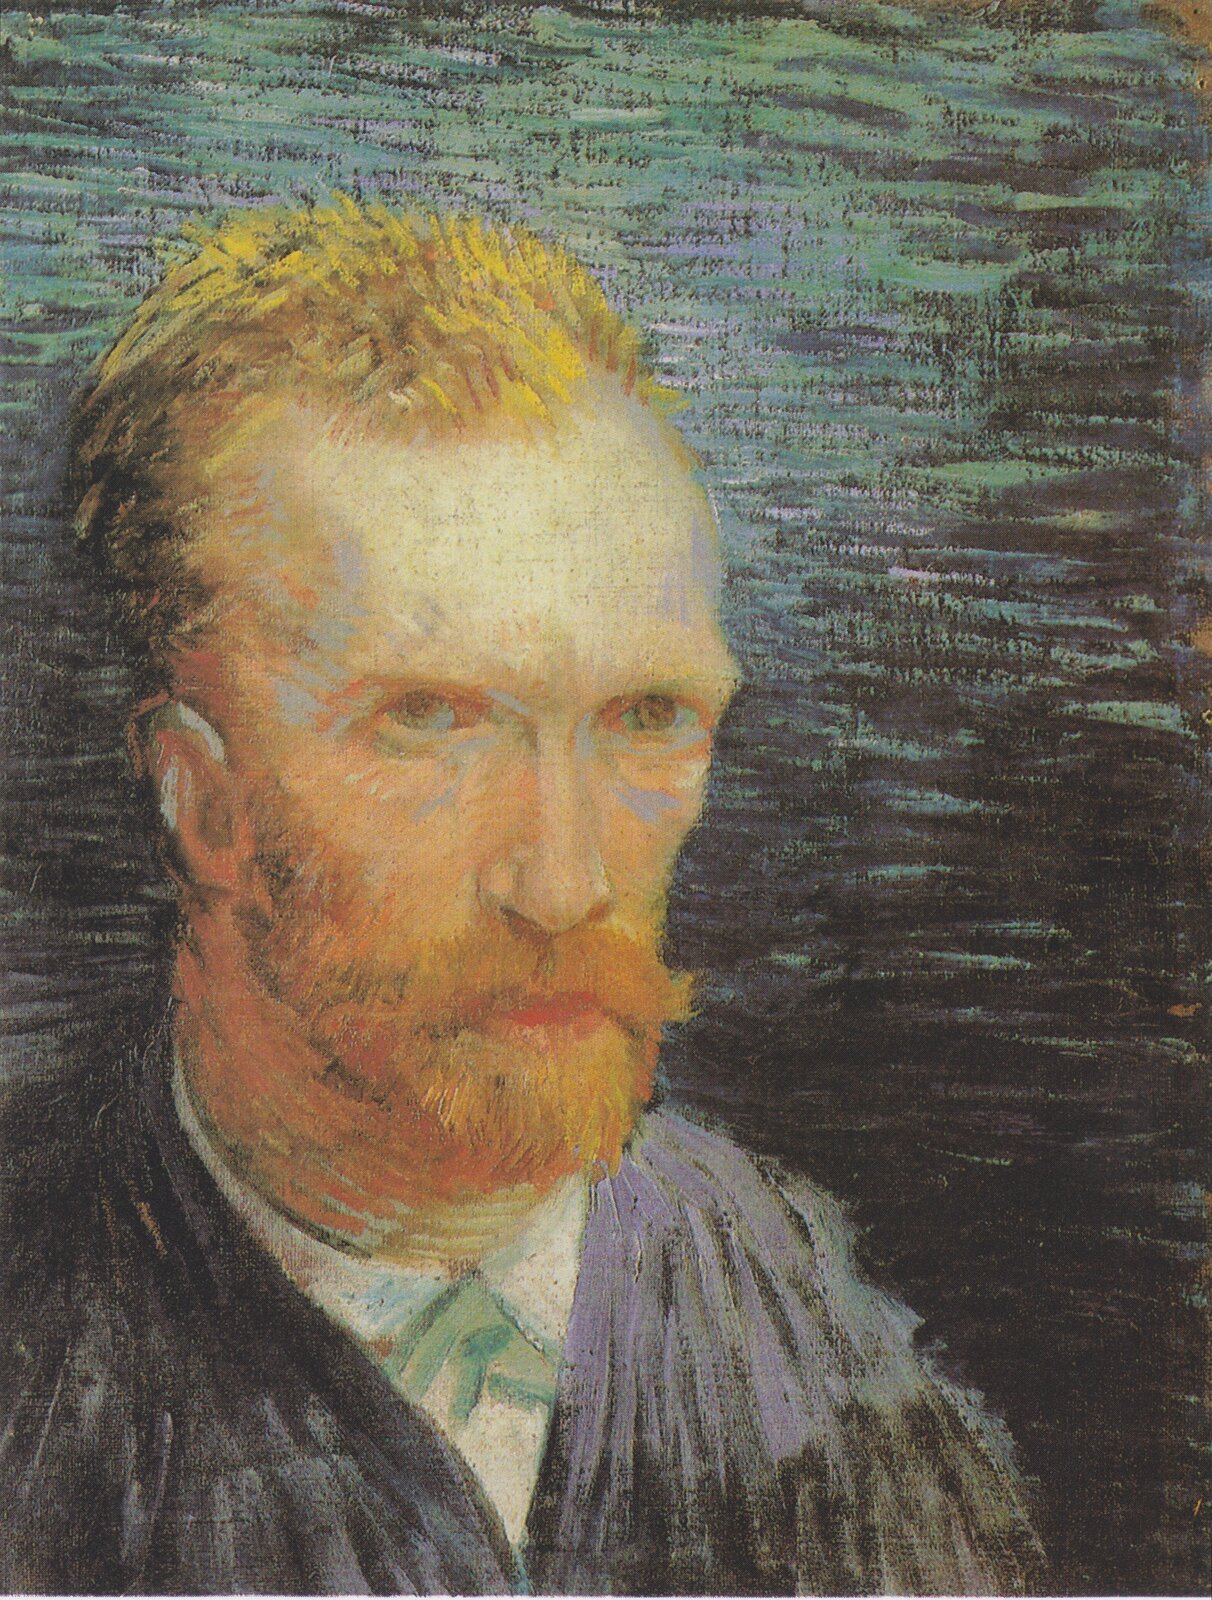 Obraz przedstawia autoportret Vincenta van Gogha. Ma krótkie, rude, nastroszone włosy z wyraźnymi zakolami oraz brązowe oczy, duży nos i rudą, krótką brodę. Ubrany jest w białą koszulę i czarną marynarkę. Mężczyzna ukazany jest od ramion w górę. Ciało i twarz mężczyzny skierowane są lekko w prawą stronę obrazu. Tło zamazane, przeważają odcienie czerni i zieleni.